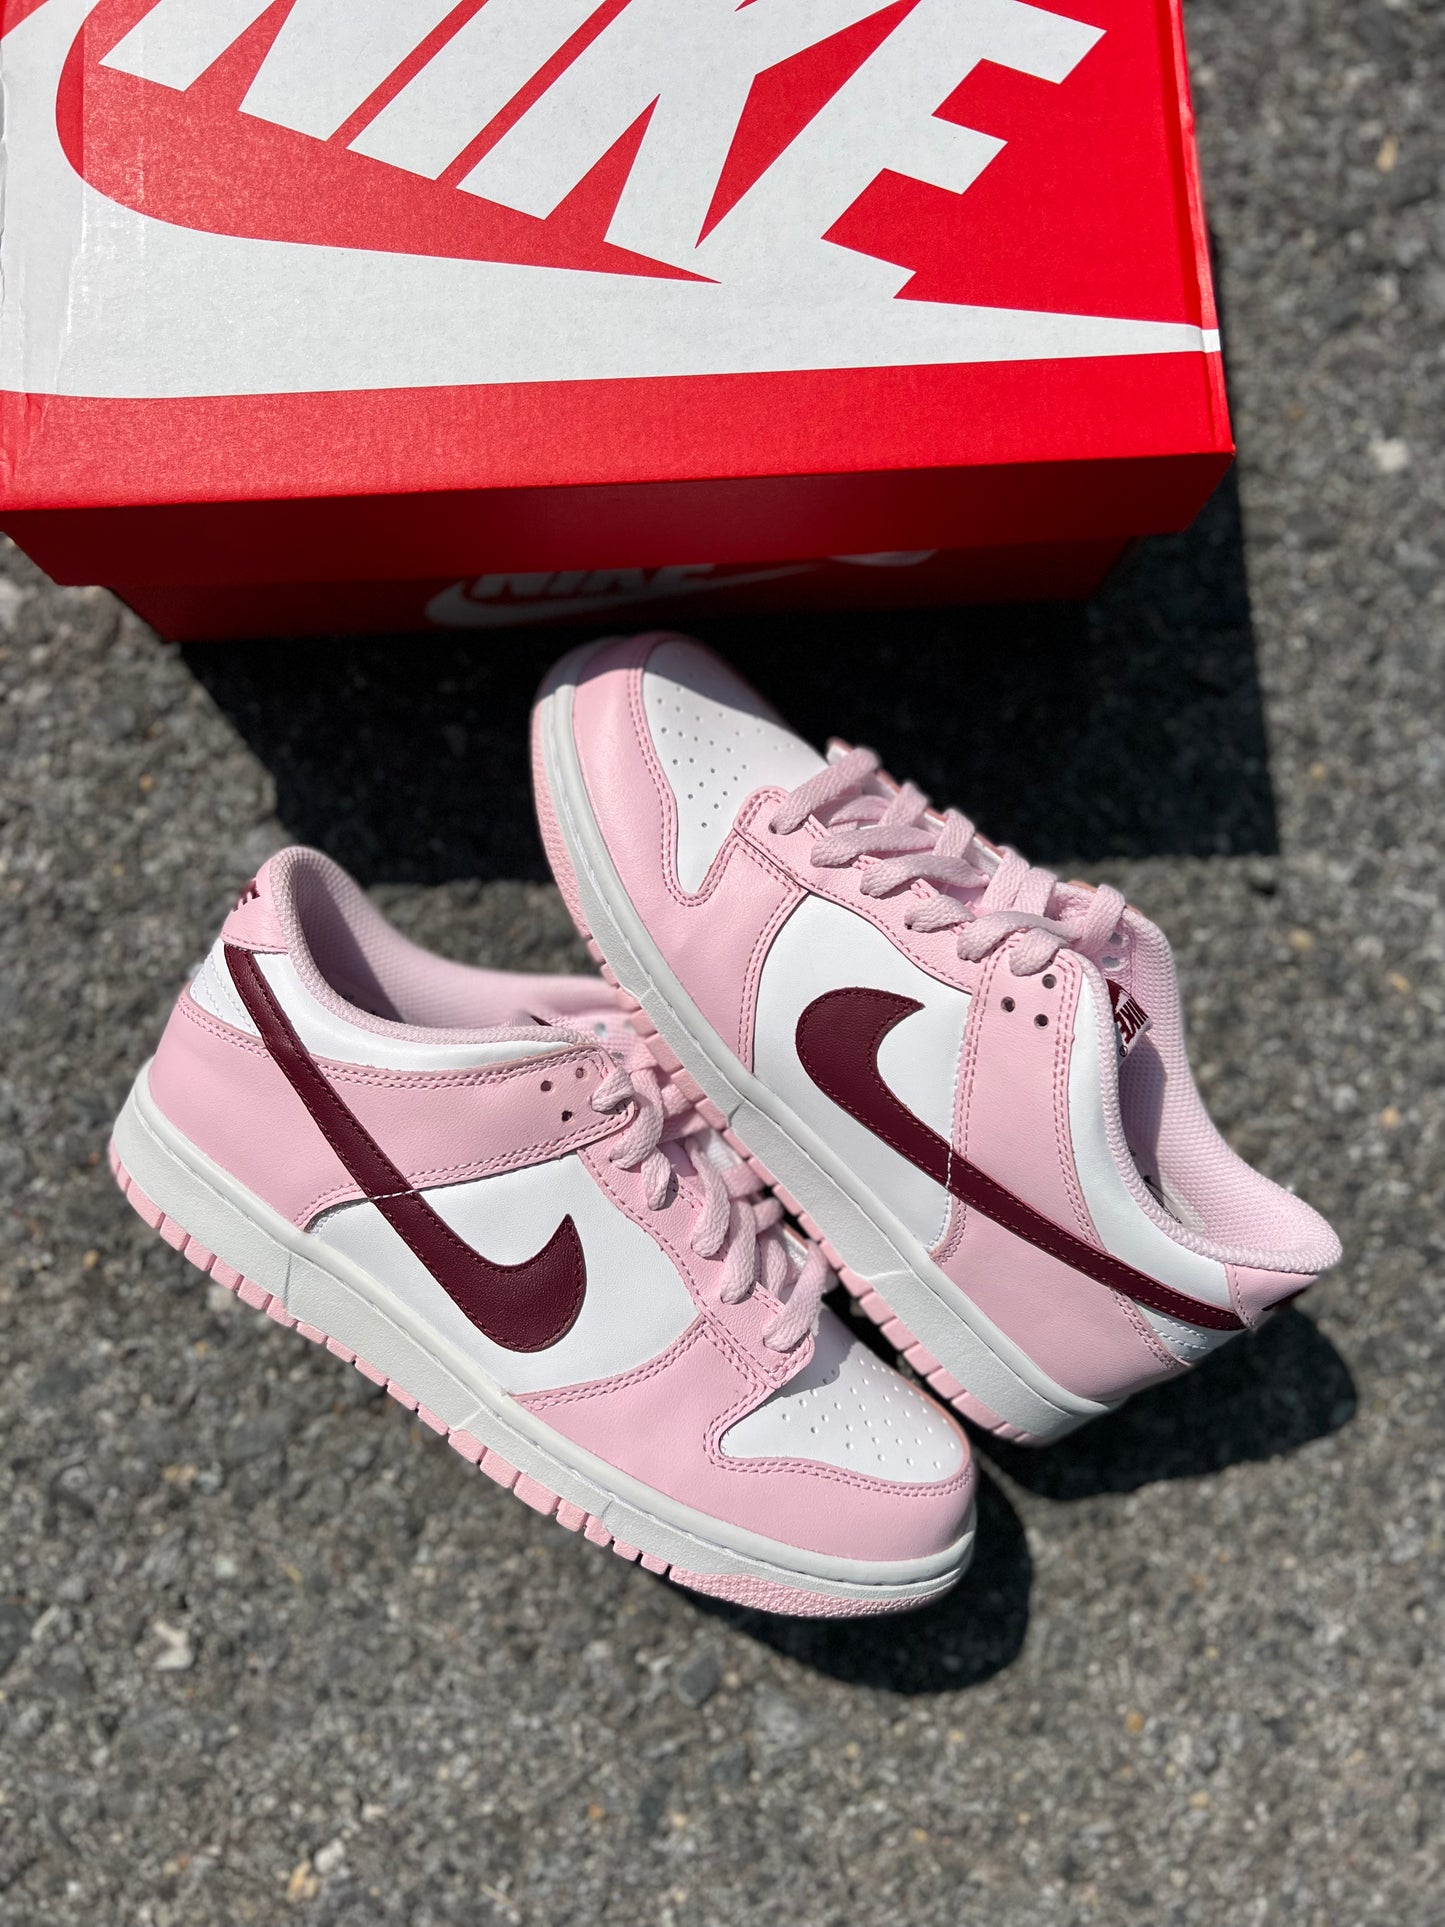 Nike Dunk Low “Pink Foam” (GS)